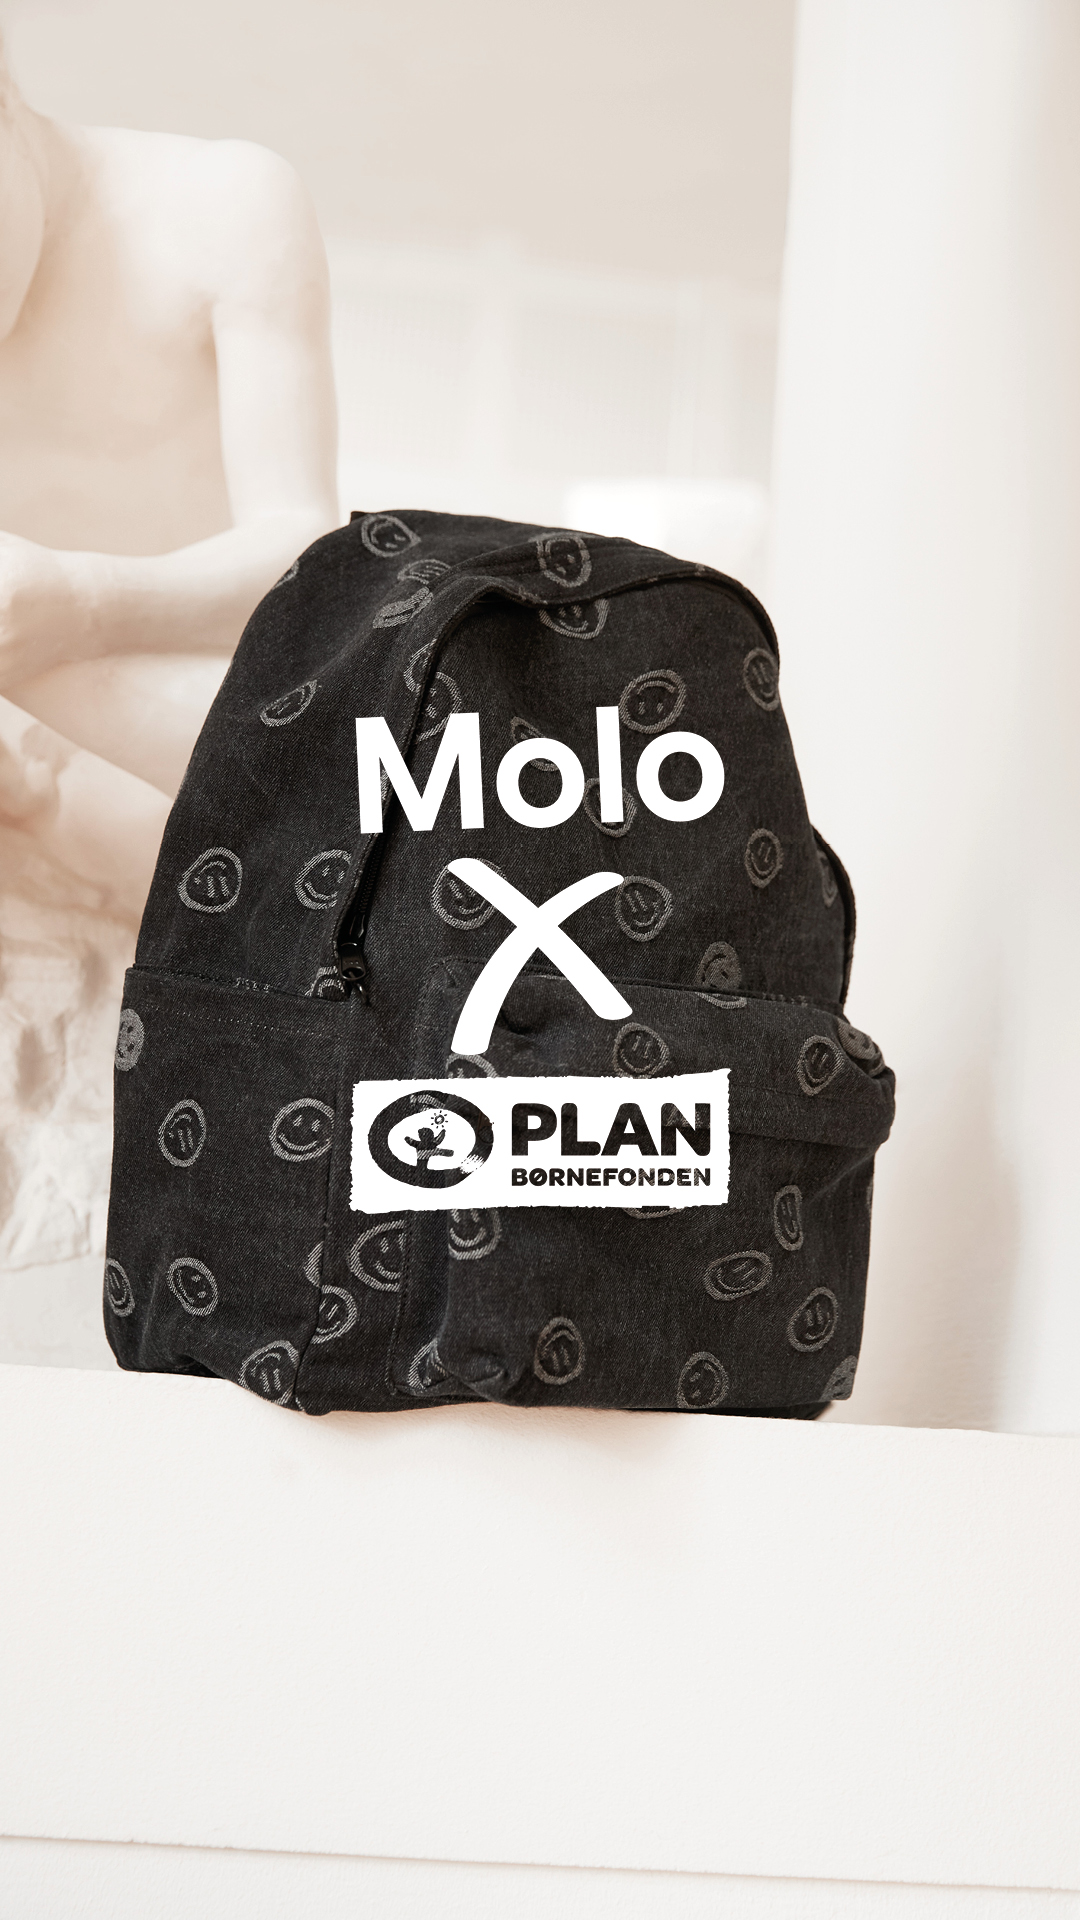 Køb en skoletaske hos molo – og send et barn i skole